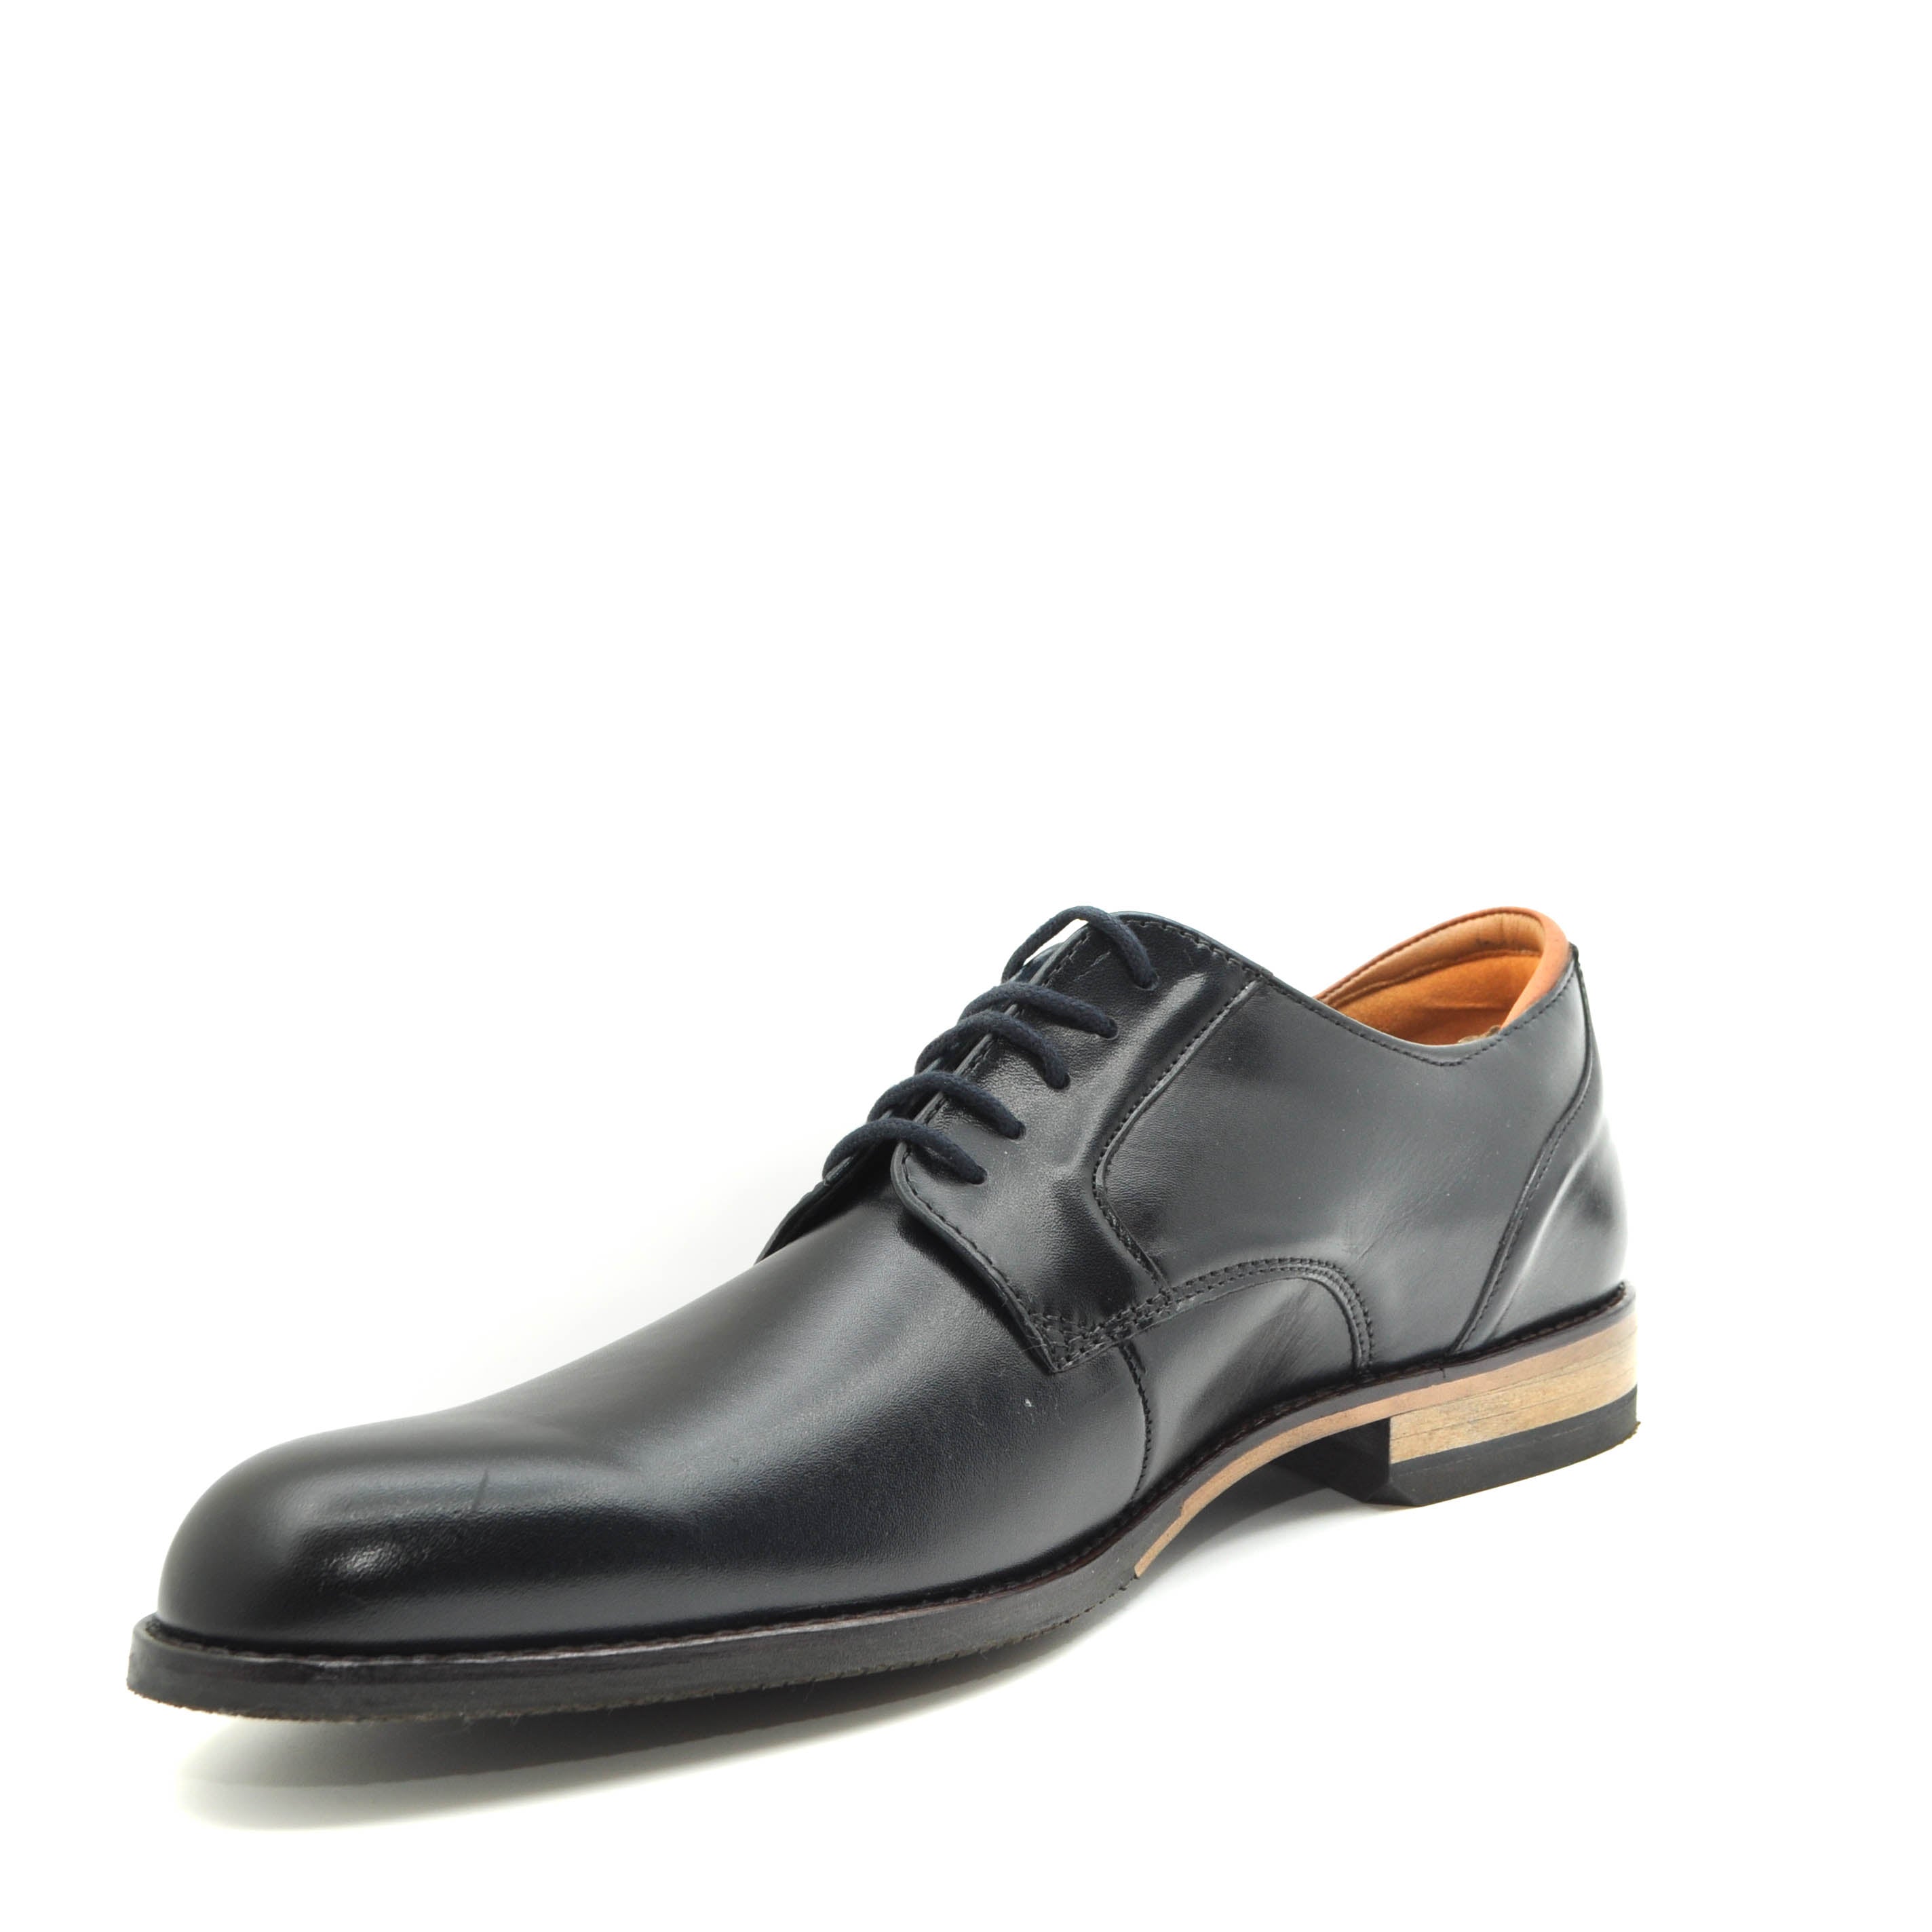 esférico Cap empleo Clarks shoes online ireland | navy leather dress shoes | suit shoes